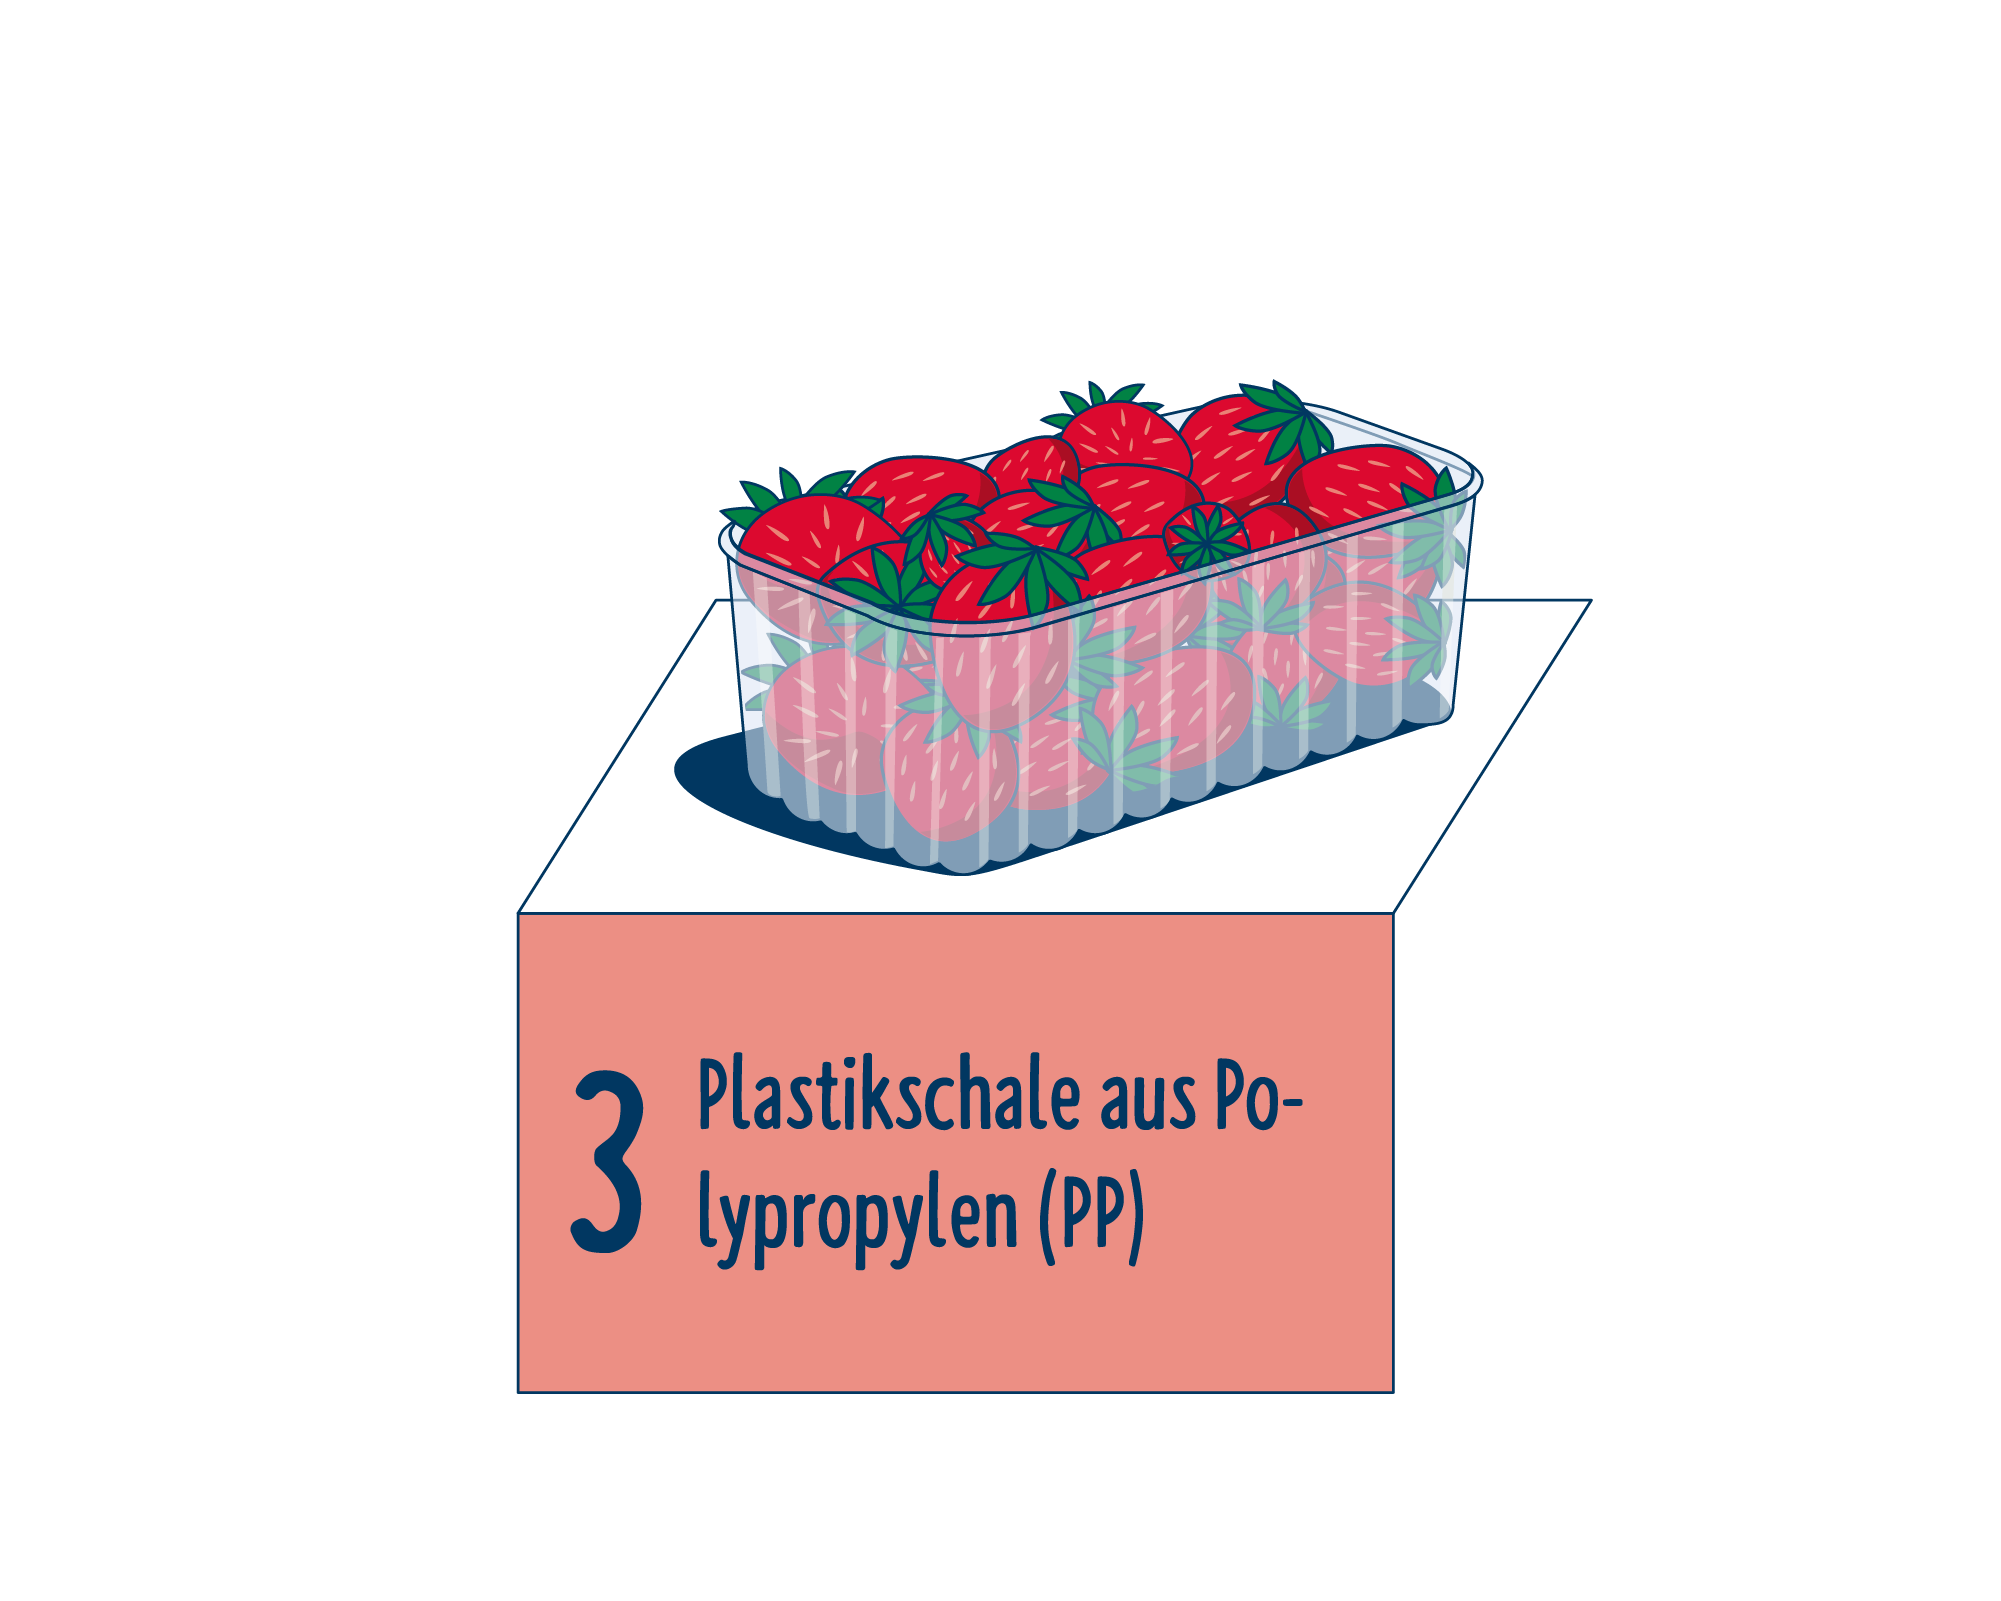 Bild Produktverpackung von Obst & Gemüse: Schalen eingeordnet auf Platz 3, bestehend aus Plastikschale aus Polypropylen (PP).